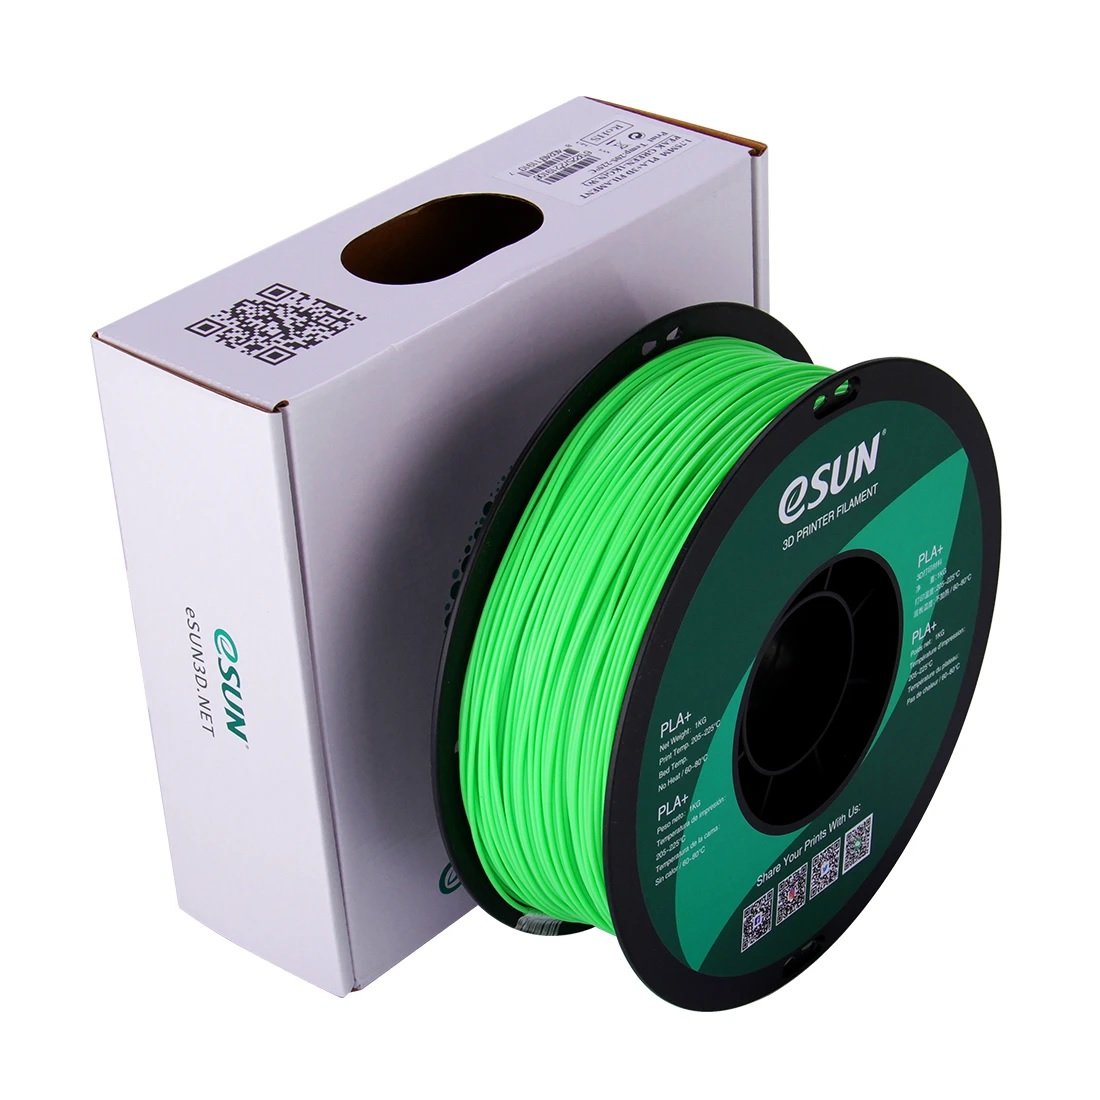 Esun Pla+ 3D Printing Filament-Peak Green